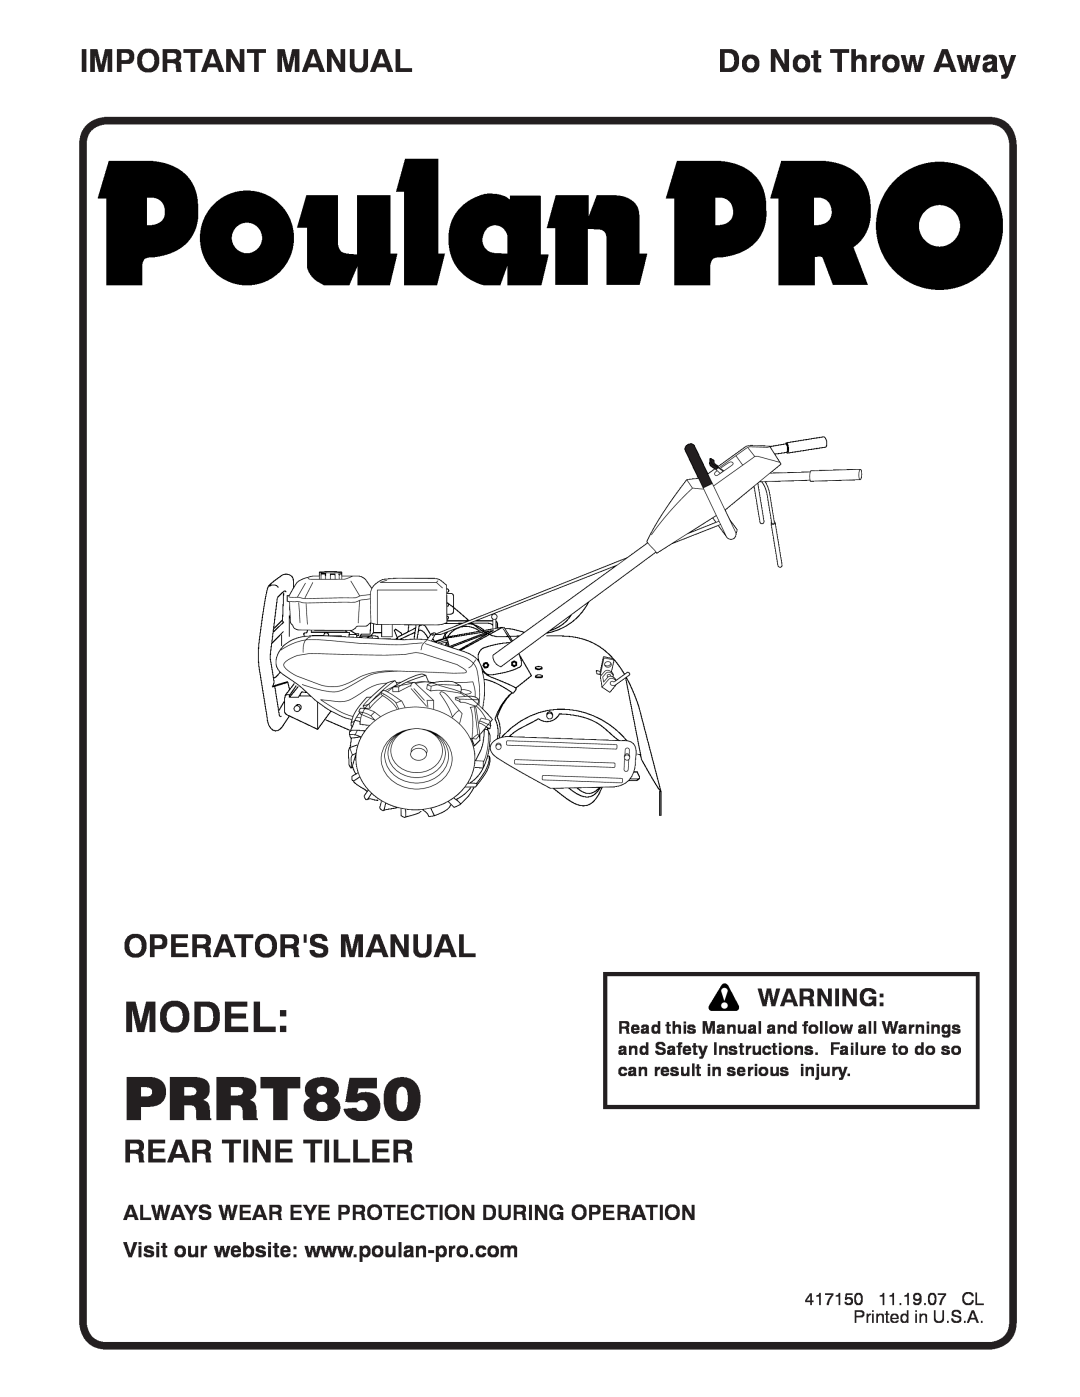 Poulan 96092001300, 417150 manual Model, Important Manual, Operators Manual, Rear Tine Tiller, PRRT850, Do Not Throw Away 